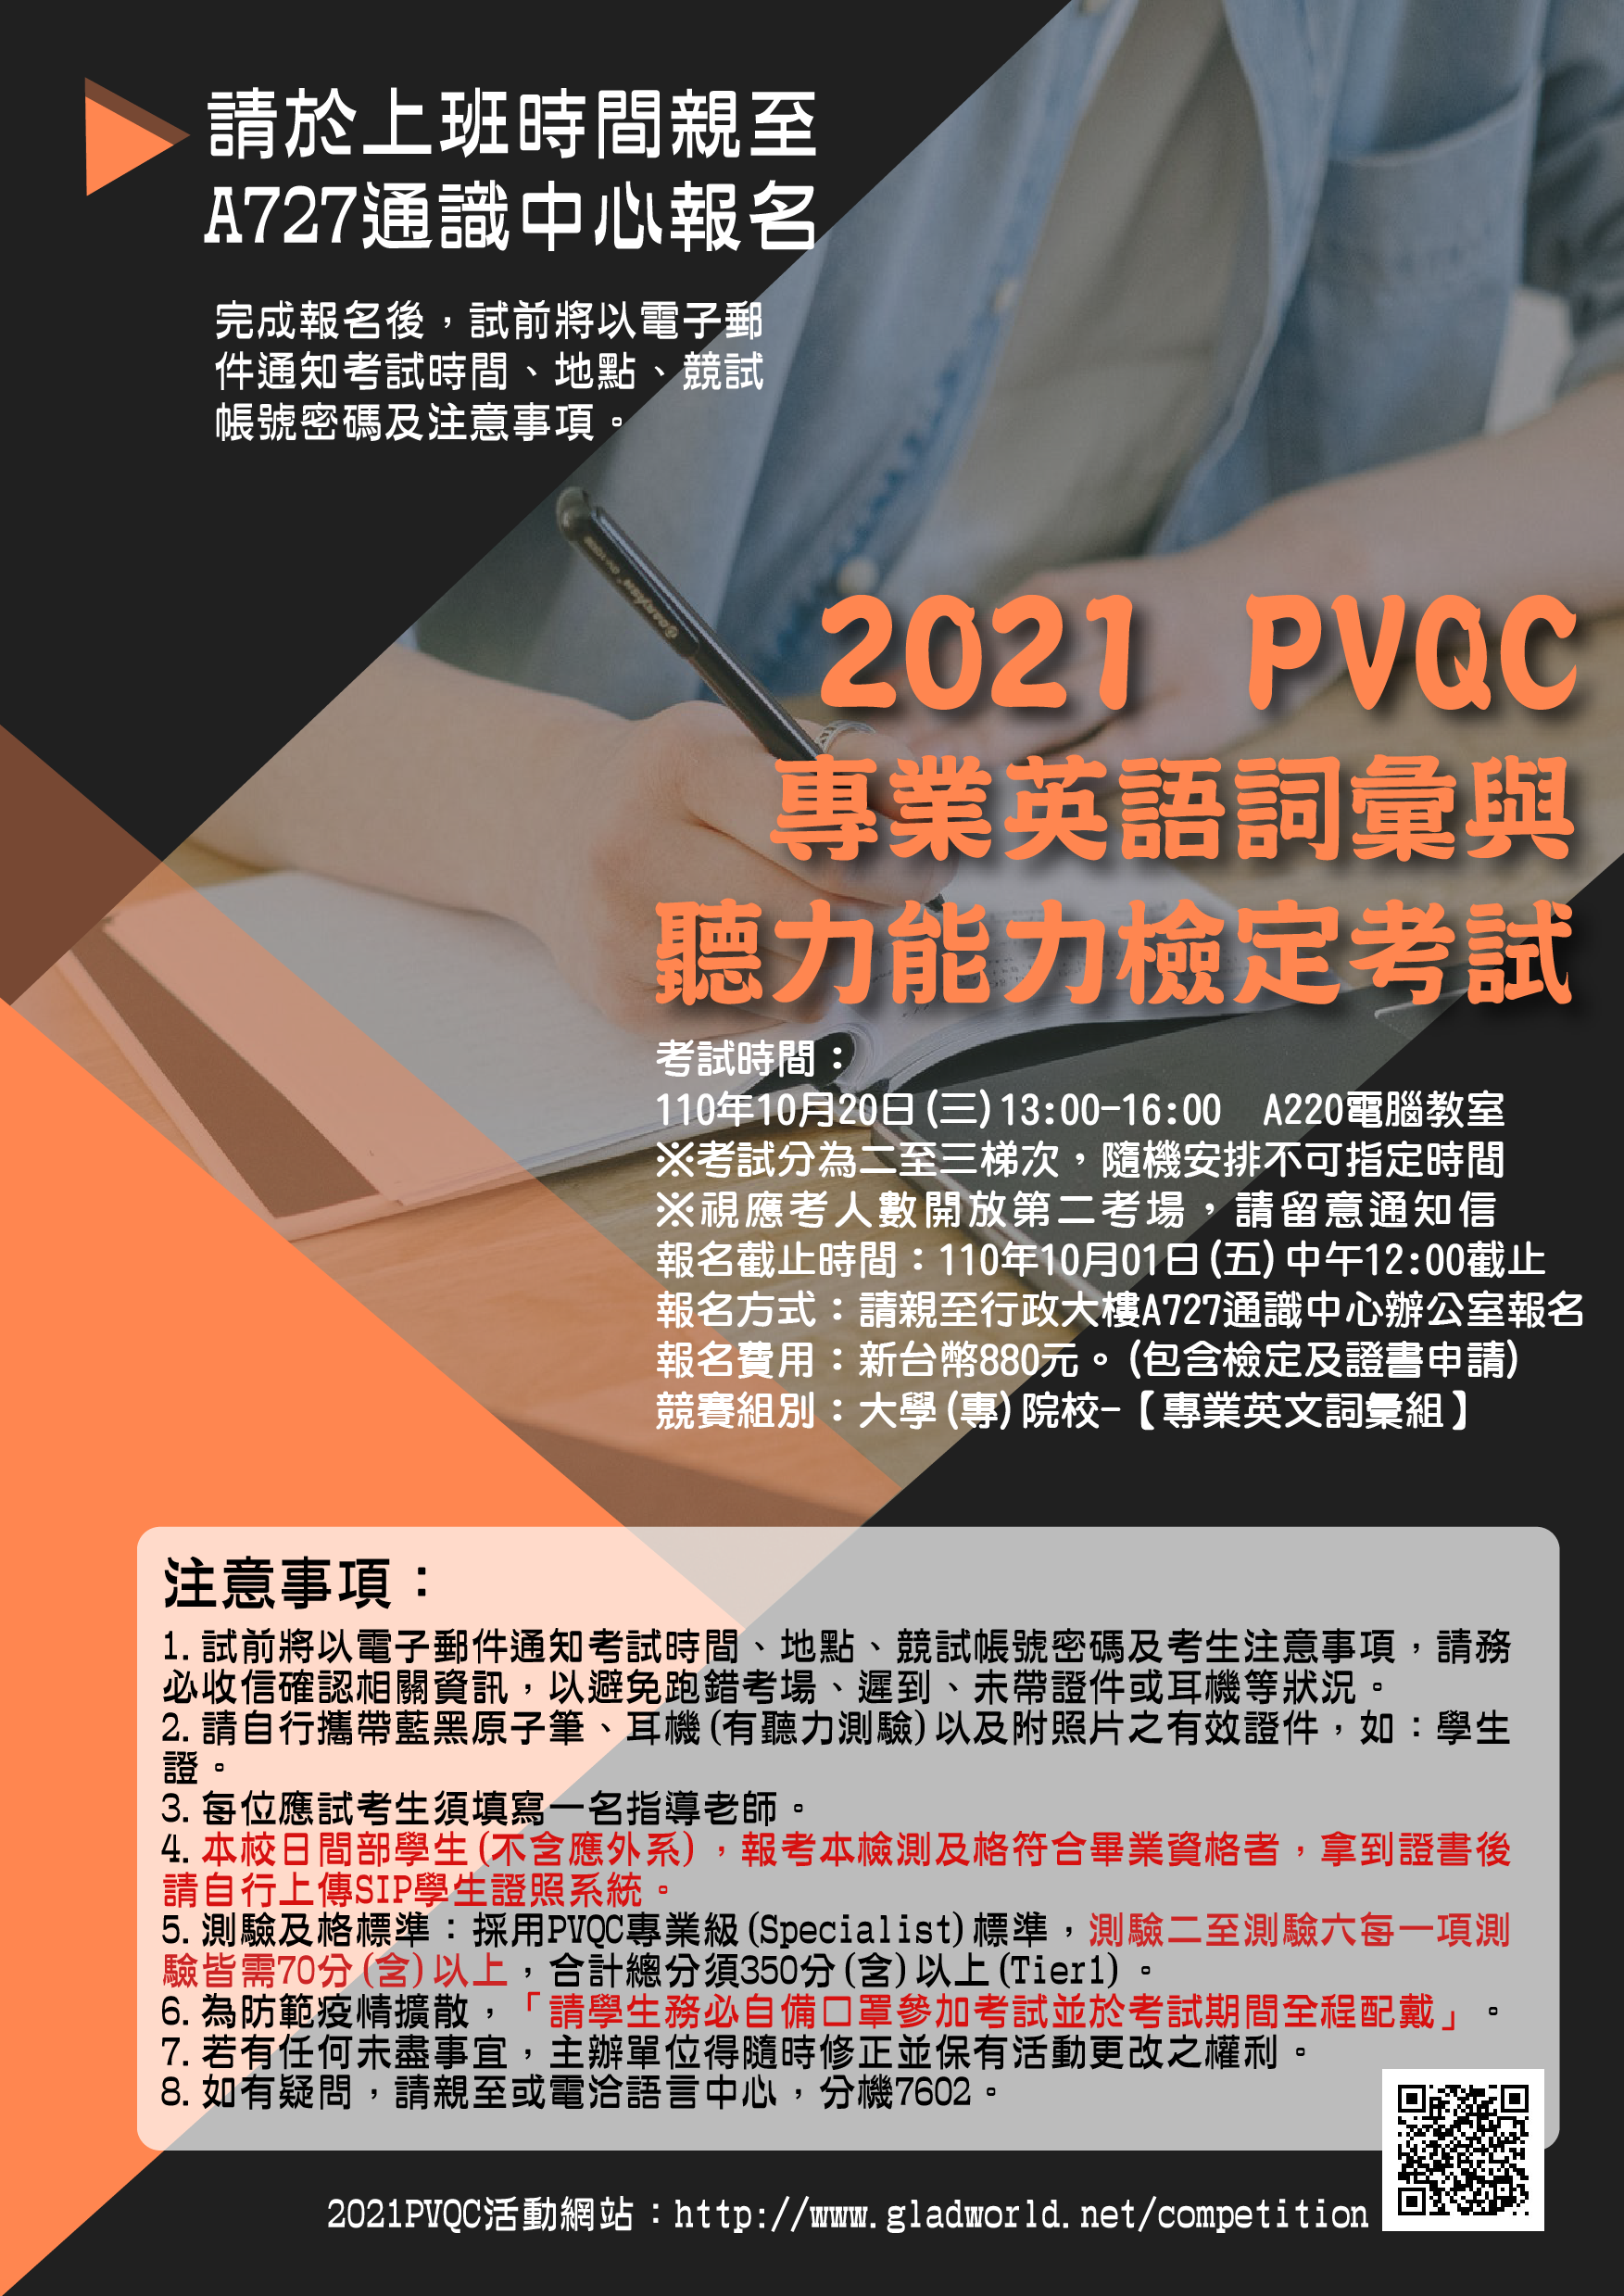 20210905-2021 pvqc-